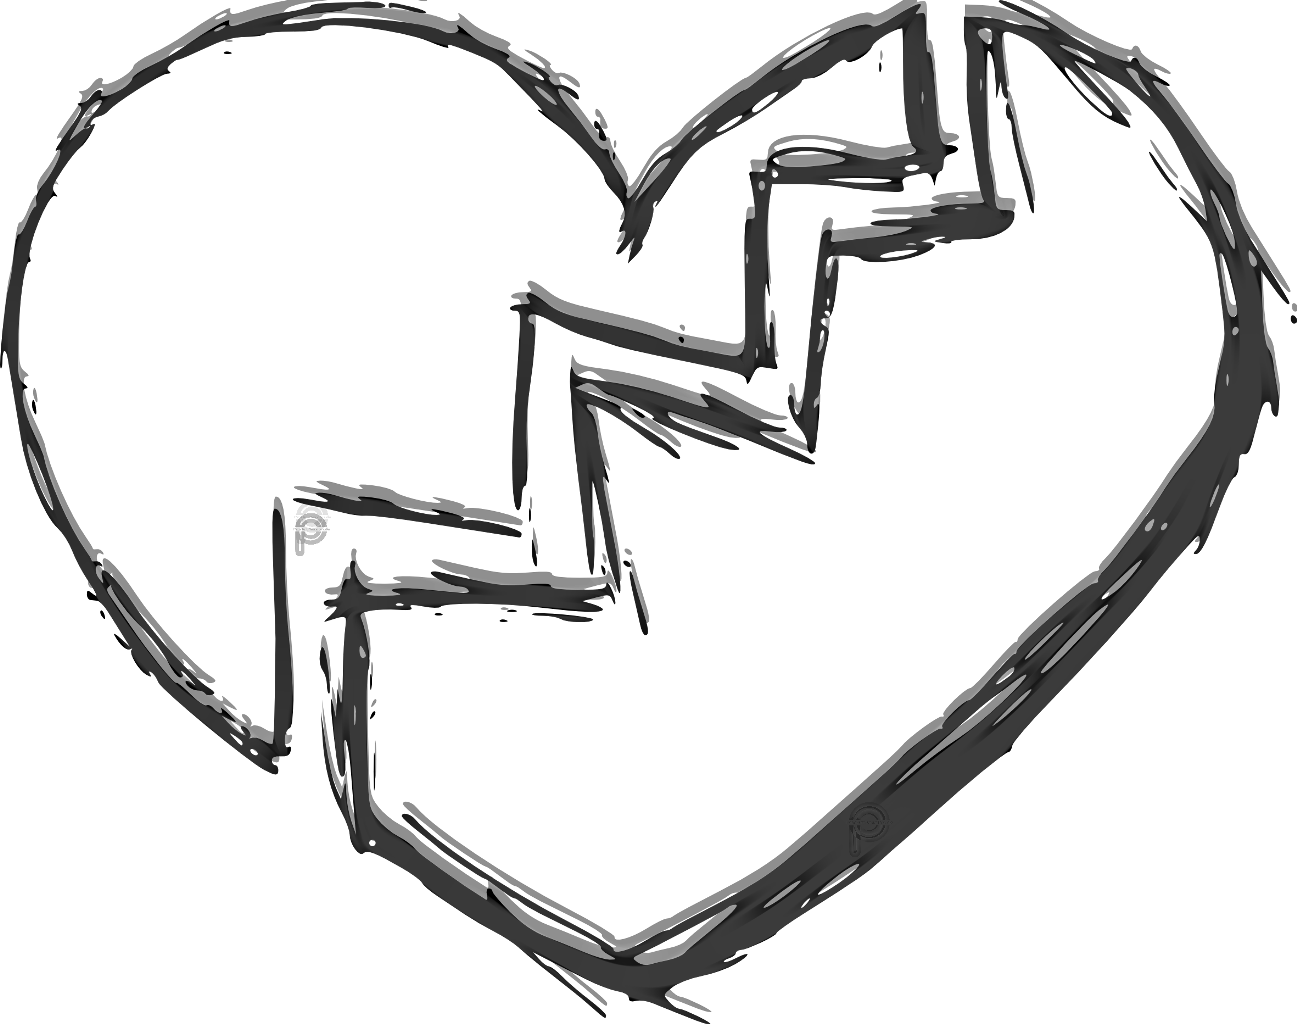 Рисунок сердце карандашом по клеточкам: человеческое, контур, шаблон, разбитое с крыльями, холодное, объемное